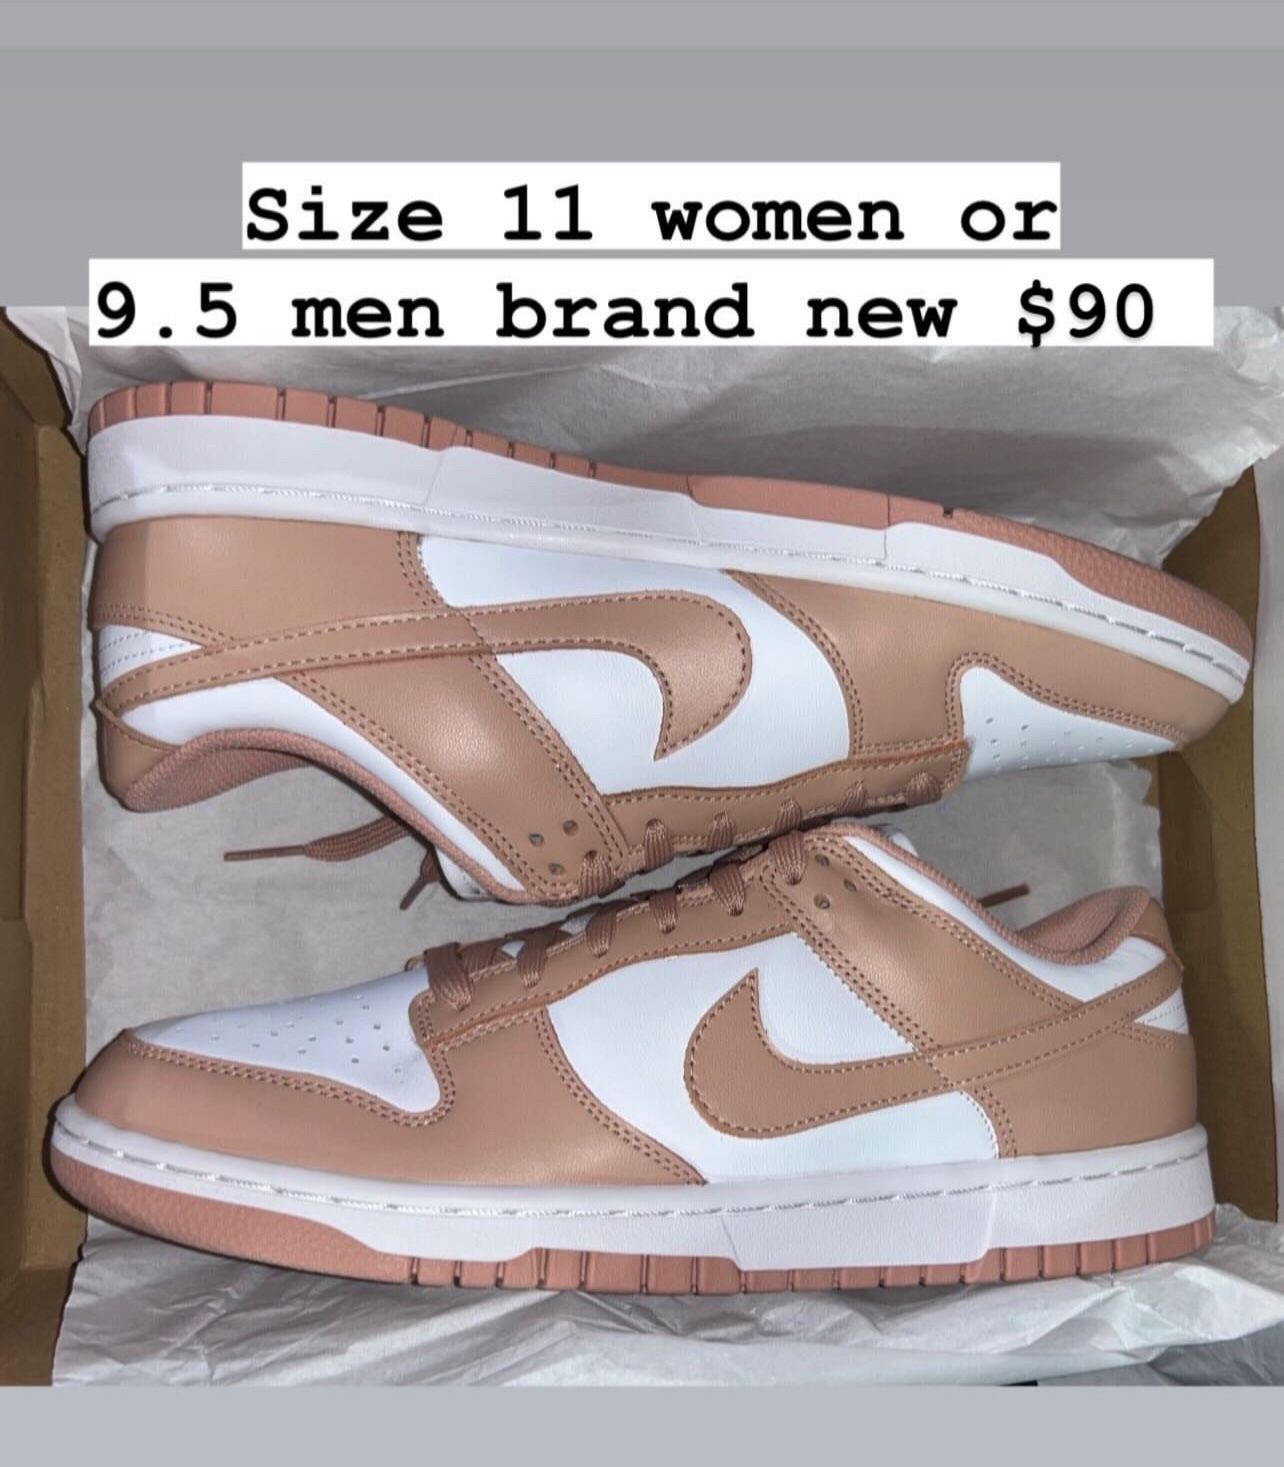 Nike Dunks Rose Whisper Brand New Size 9.5 Men Or 11 Women 